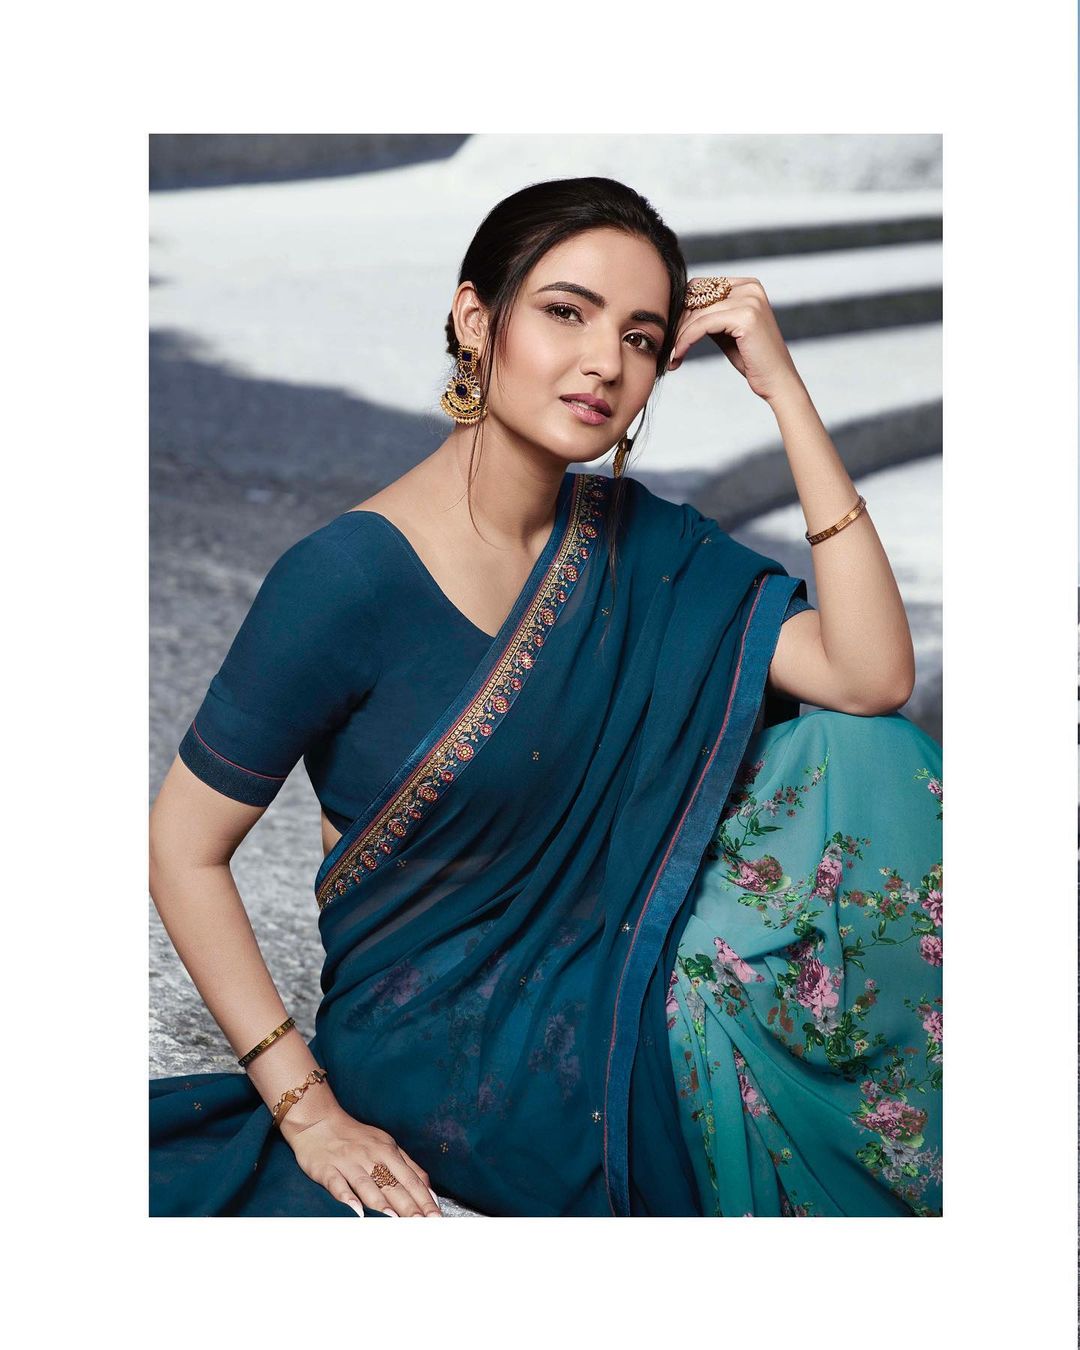 Jasmin Bhasin looks pretty in the blue floral saree.